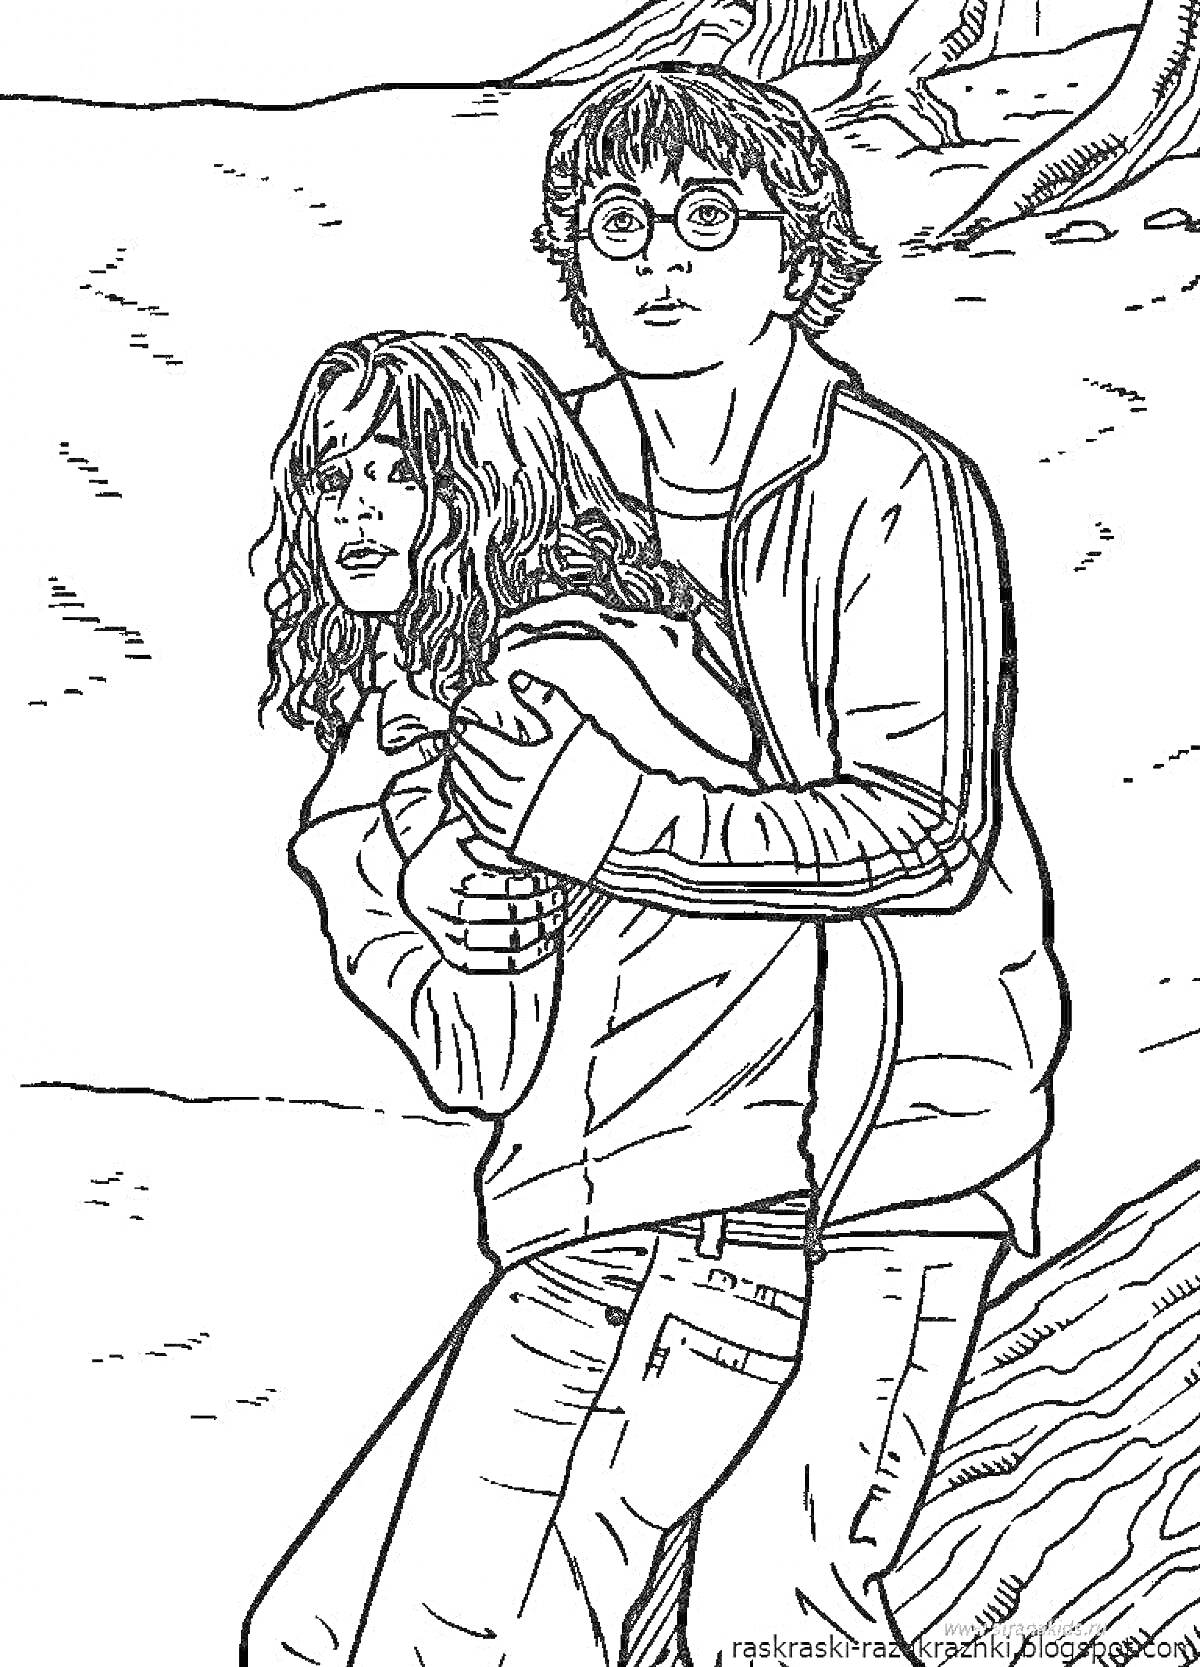 Два персонажа: юноша в очках и девушка, он обнимает её сзади, они на фоне природы